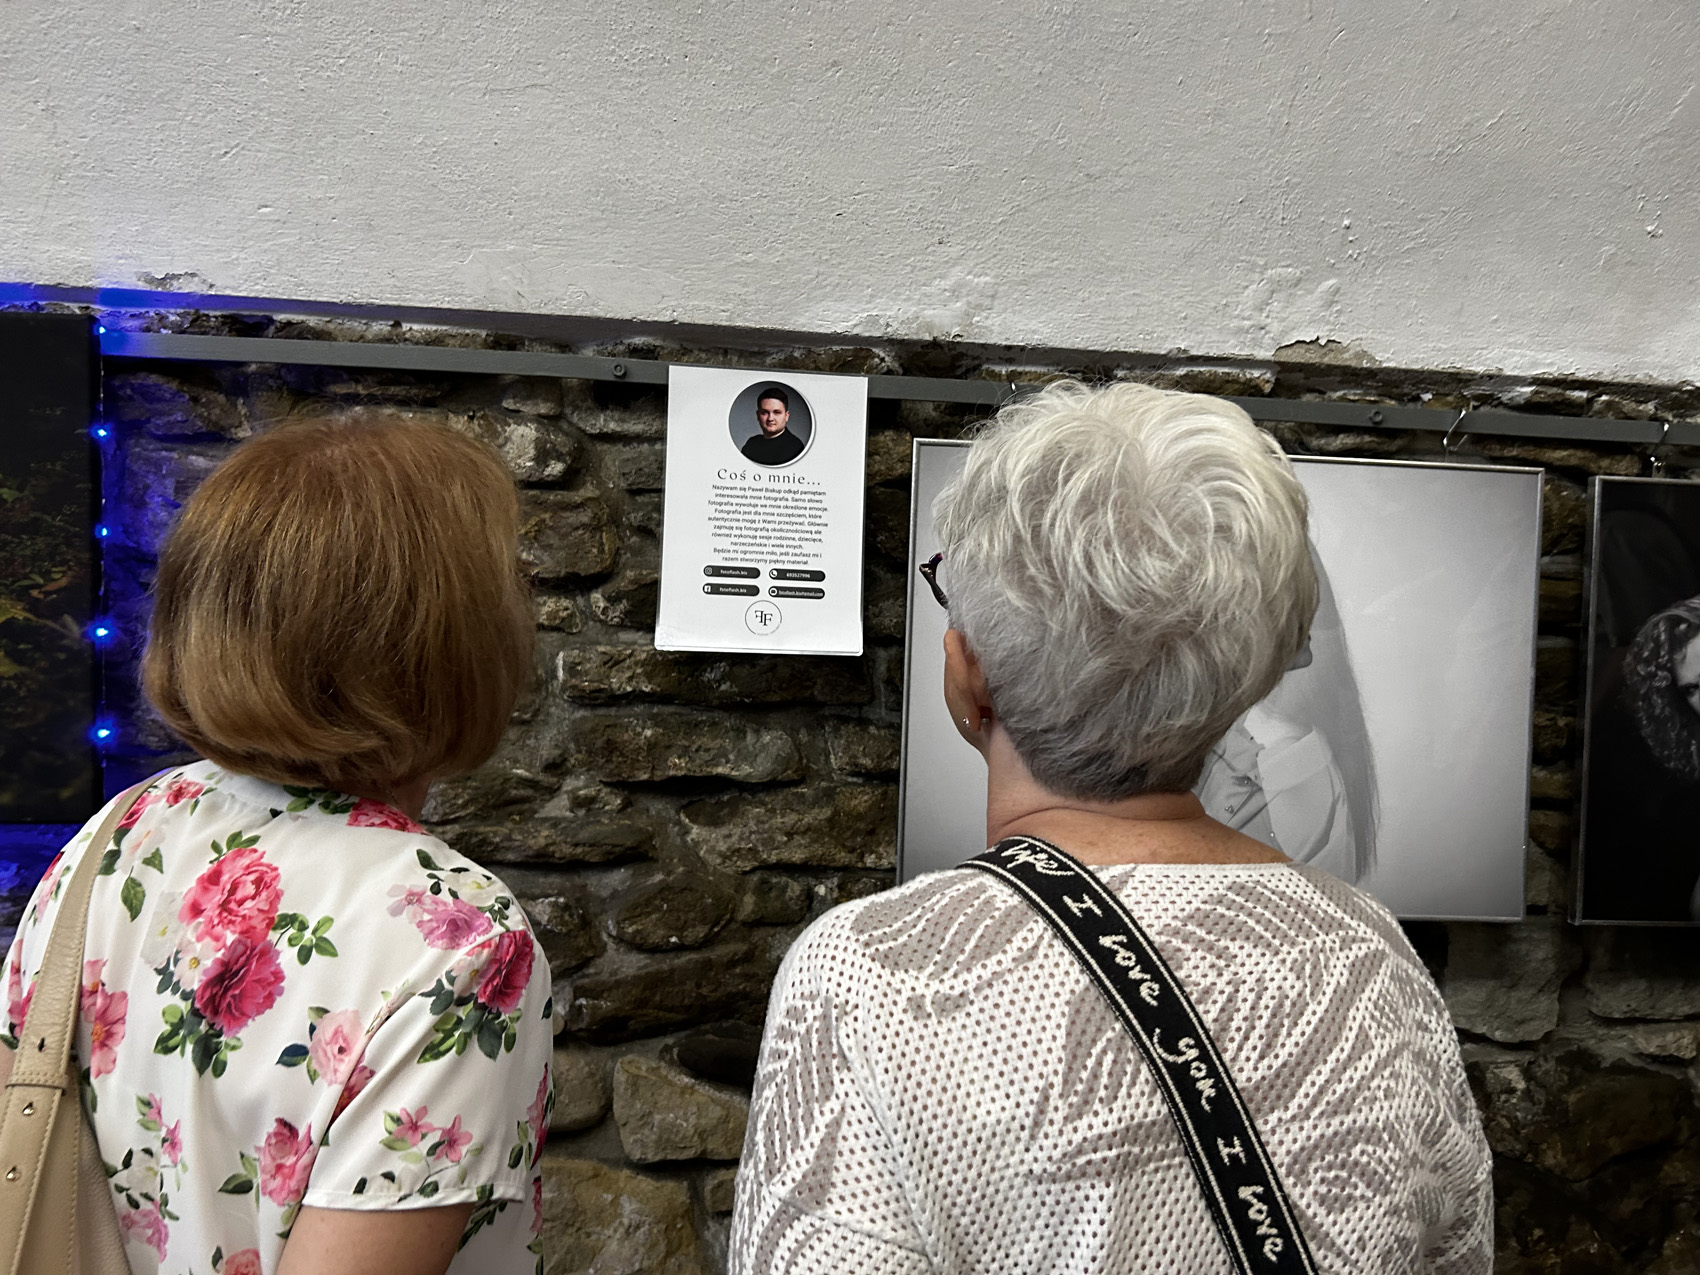 W pomieszczeniu stoją dwie kobiety, pokazane od tyłu. Przed nimi na ścianie wiszą obrazy i kartka z tekstem. Kobiety czytają tekst na kartce.